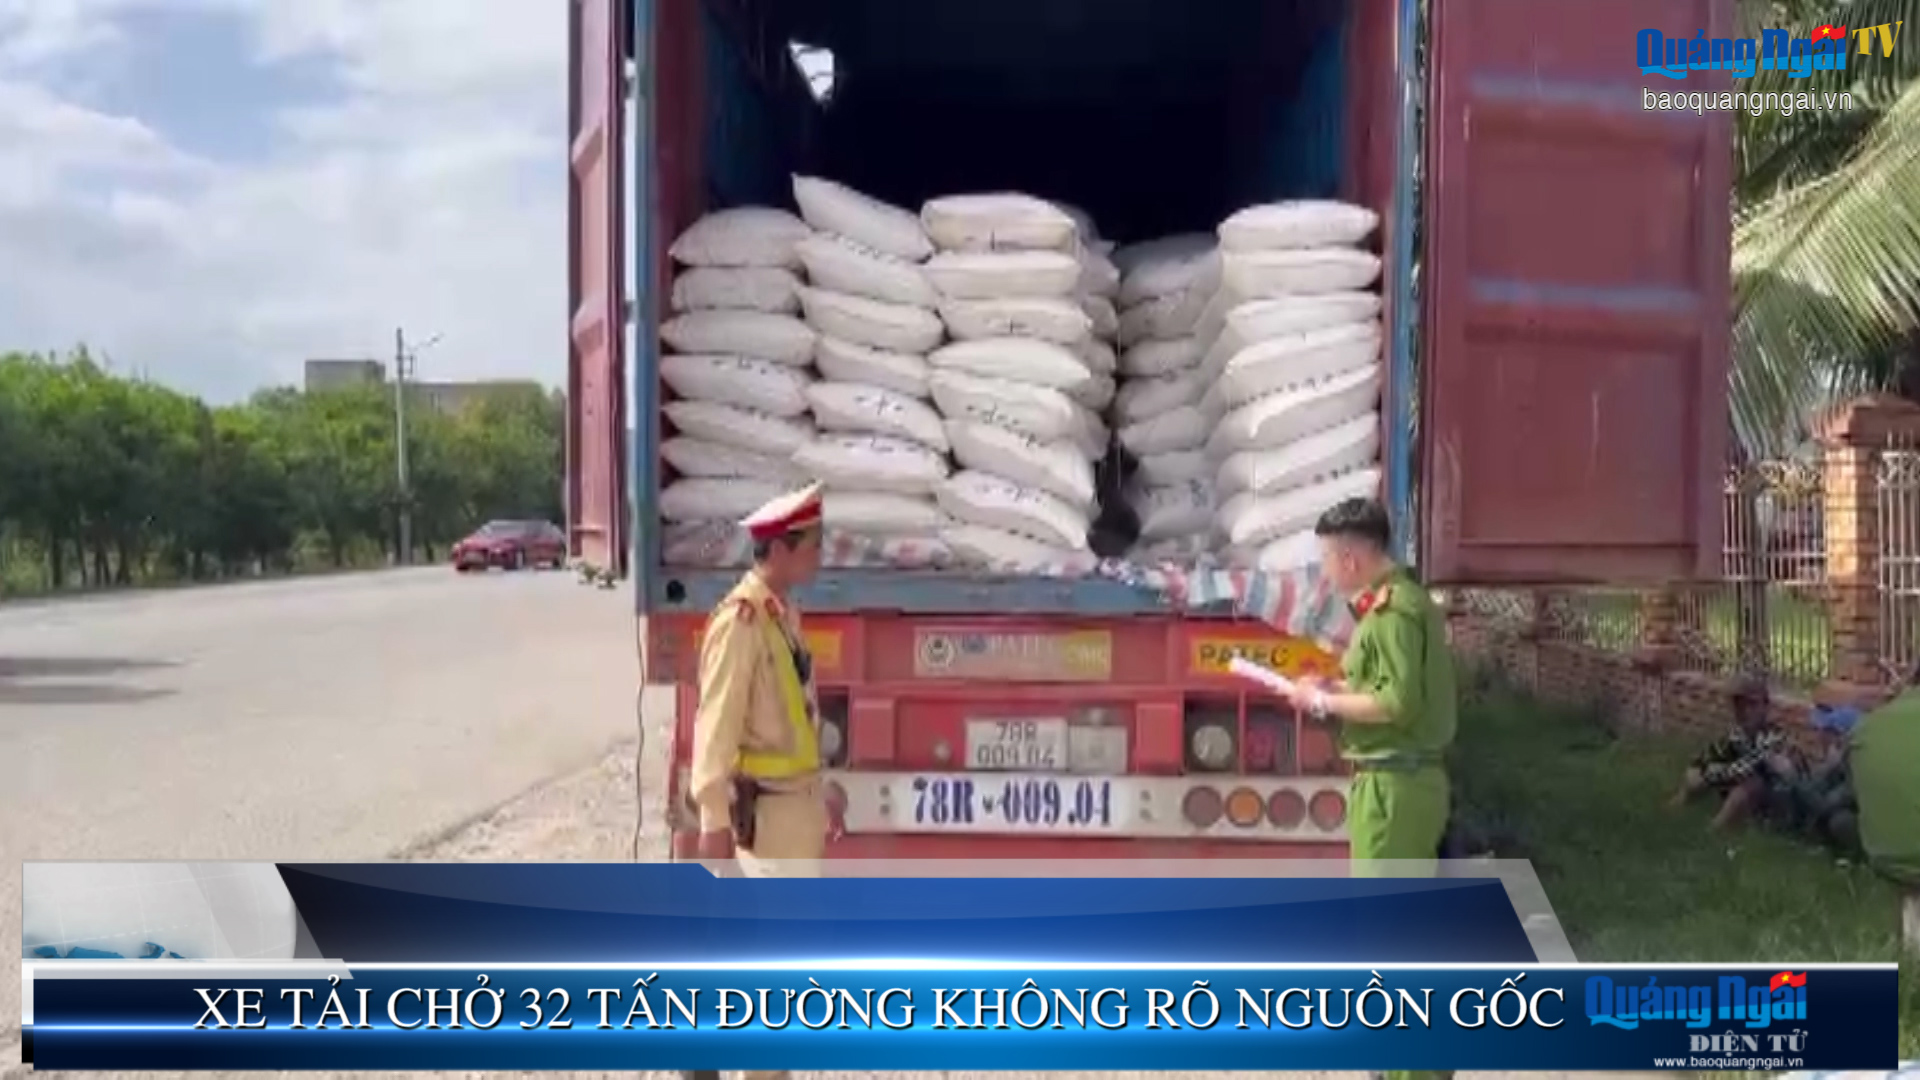 Video: Xe tải chở 32 tấn đường không rõ nguồn gốc